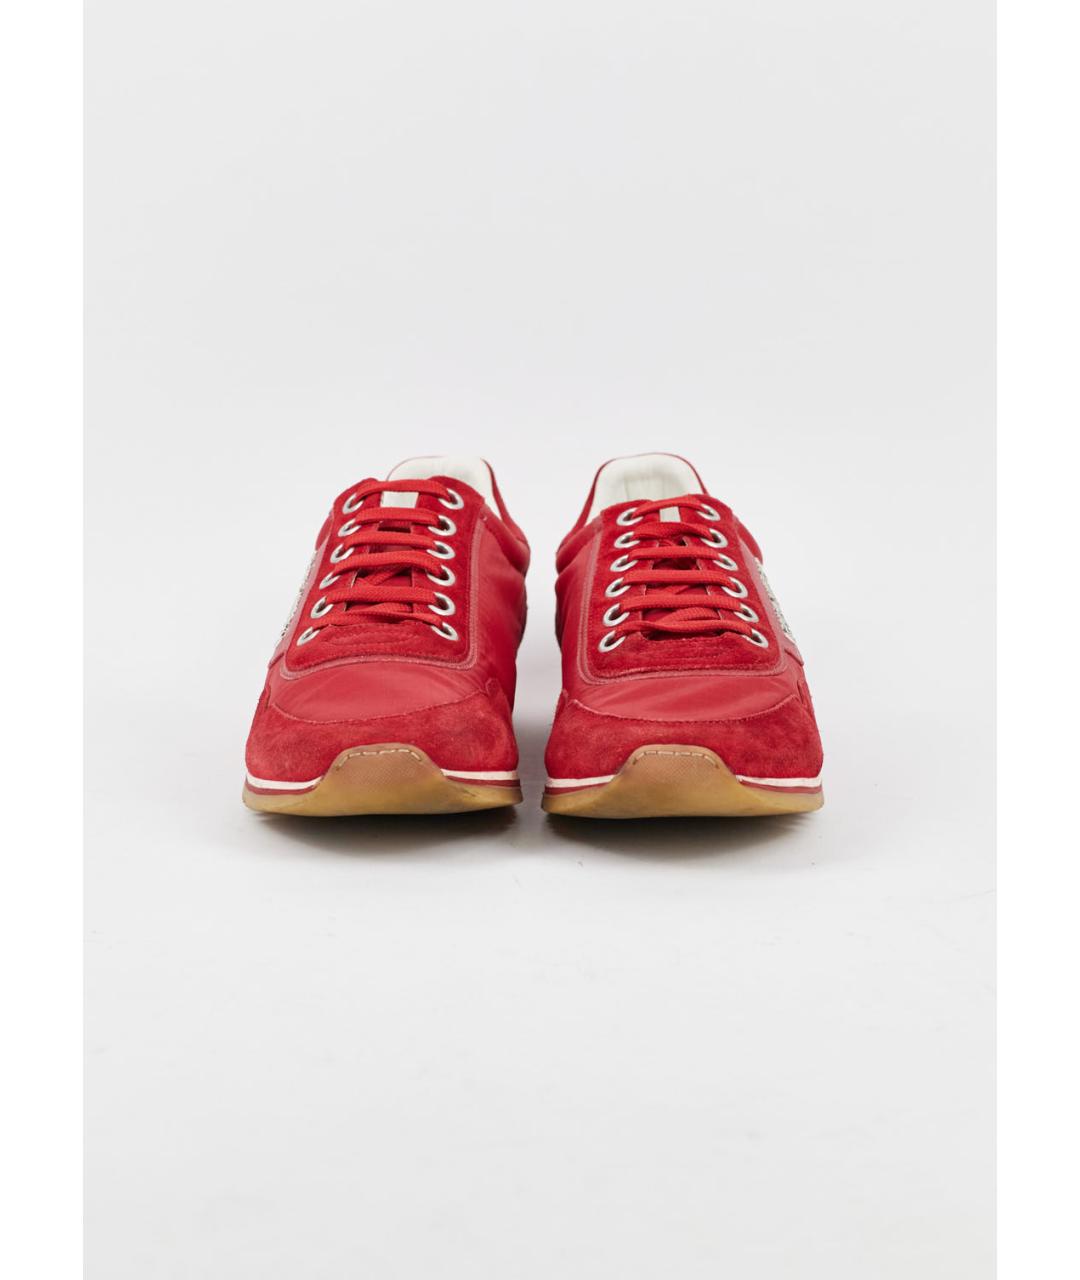 LOUIS VUITTON PRE-OWNED Красные текстильные низкие кроссовки / кеды, фото 2